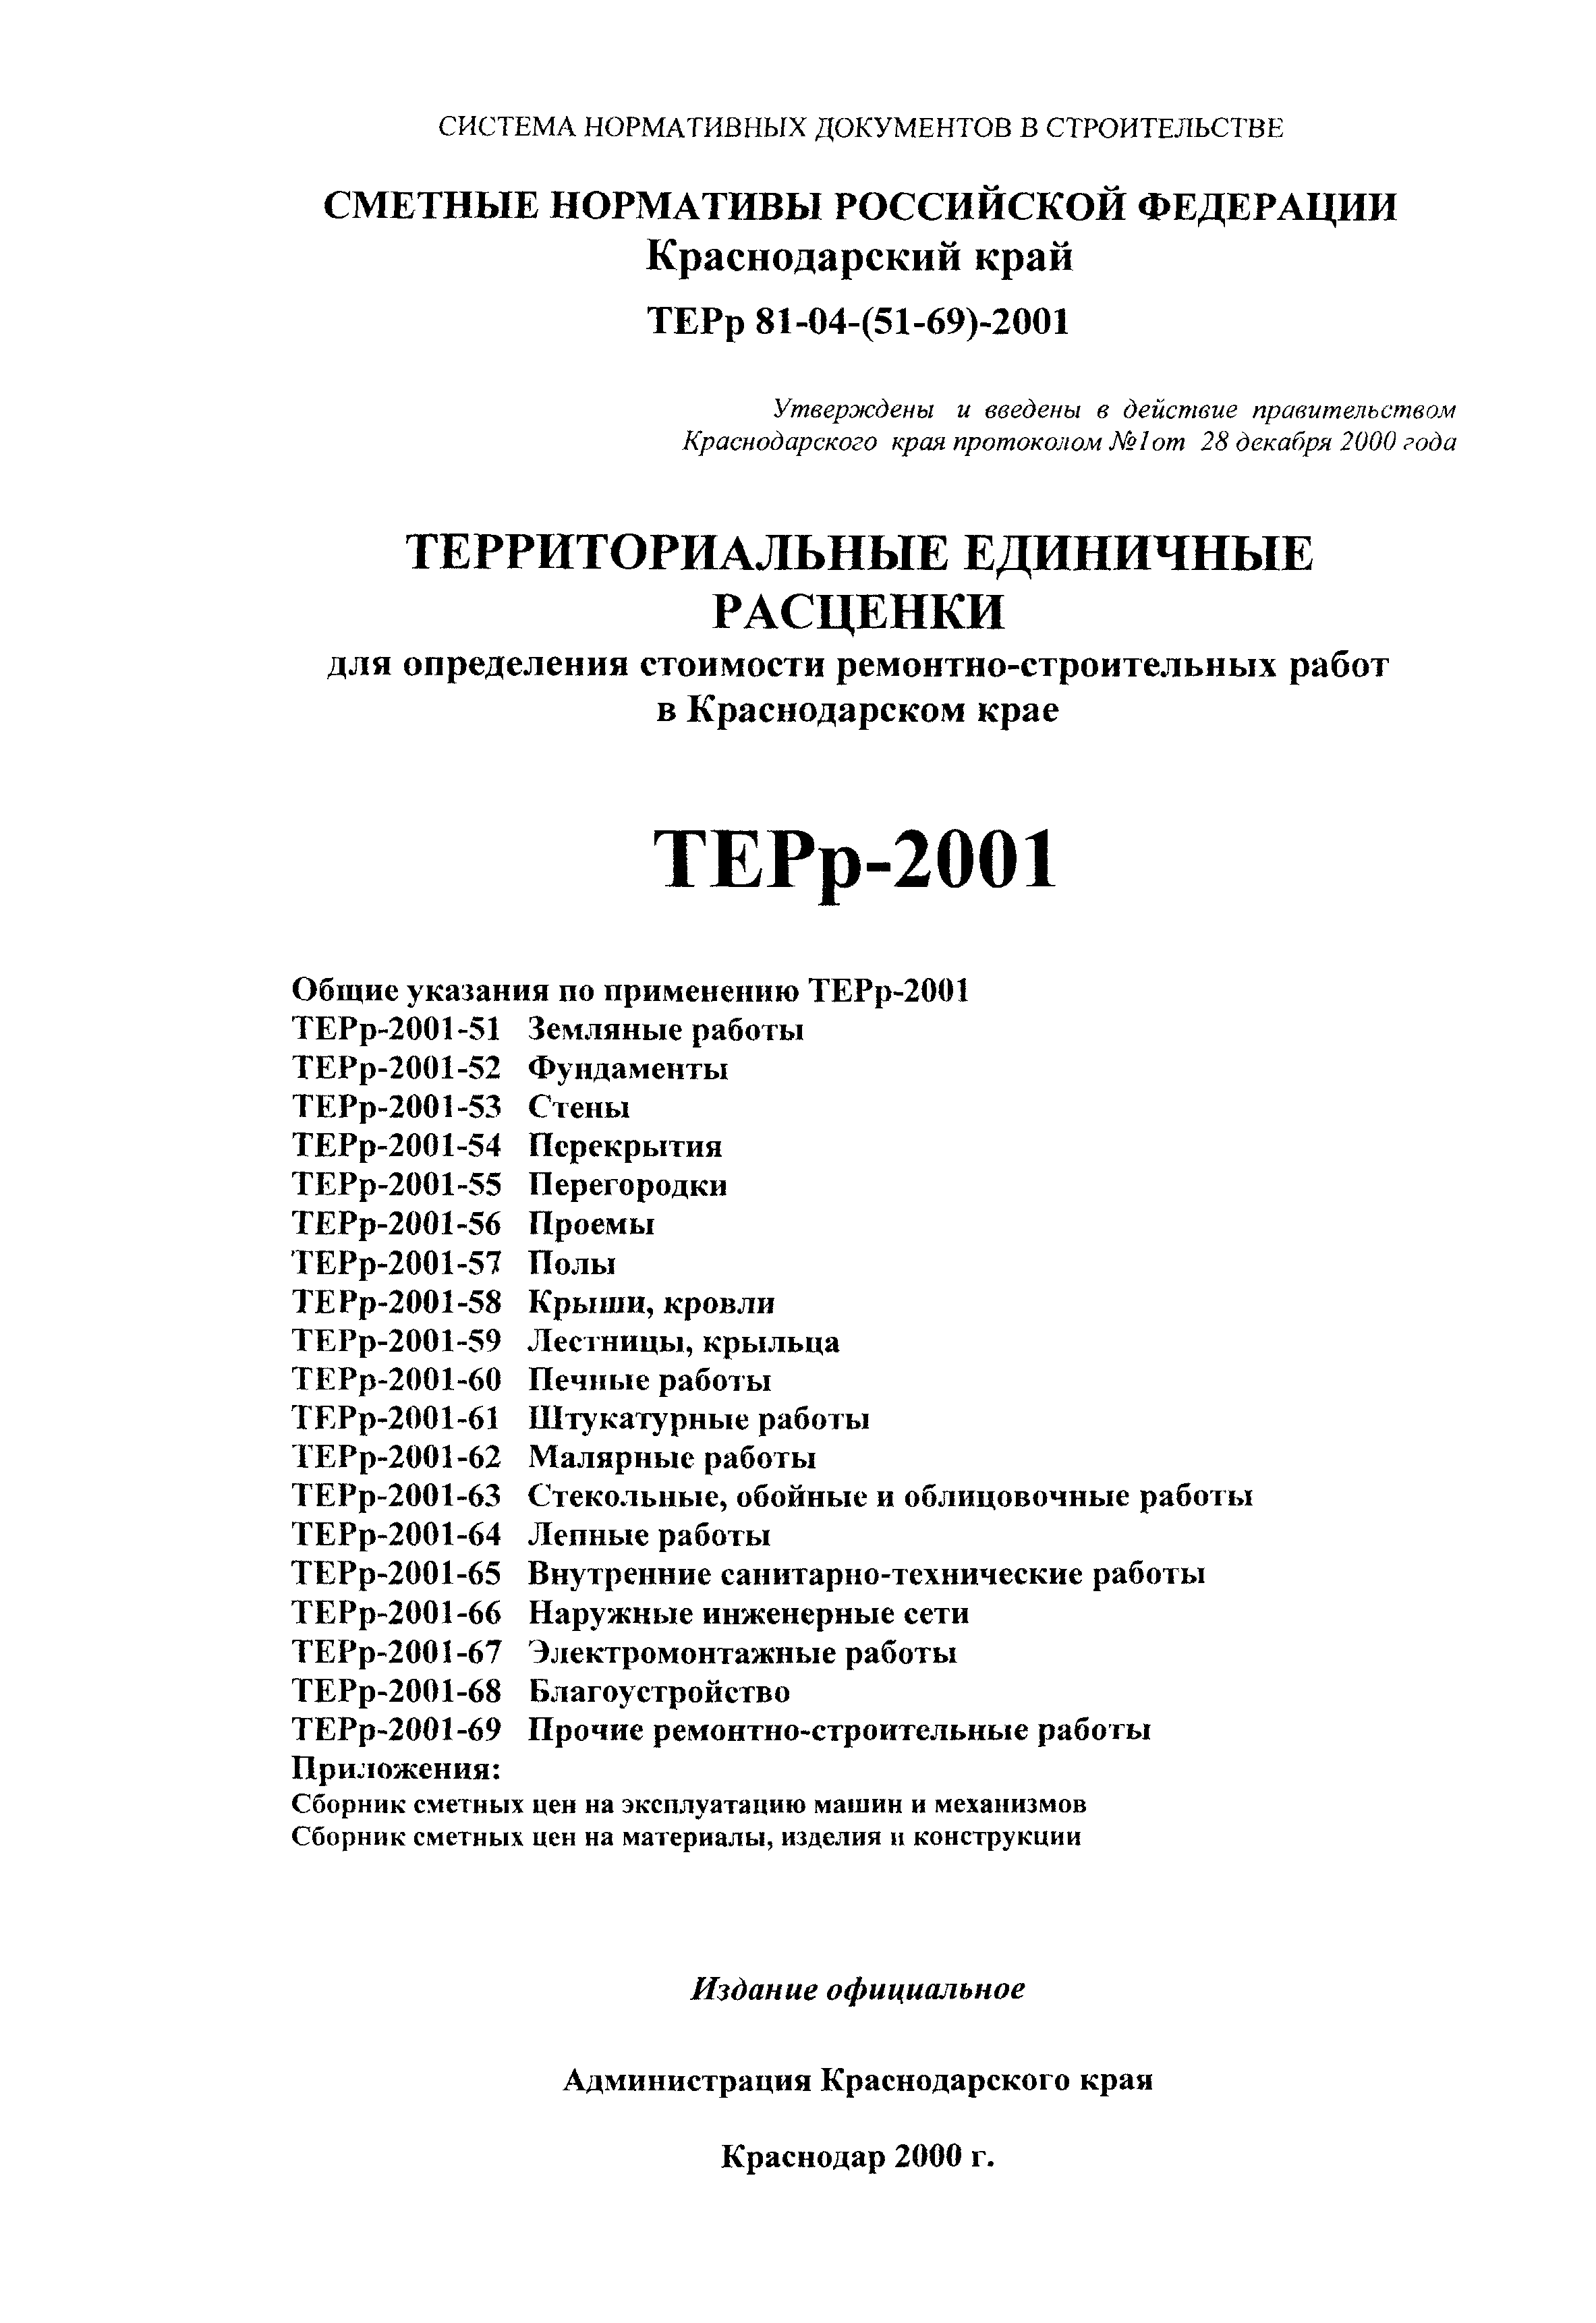 ТЕРр Краснодарского края 2001-66